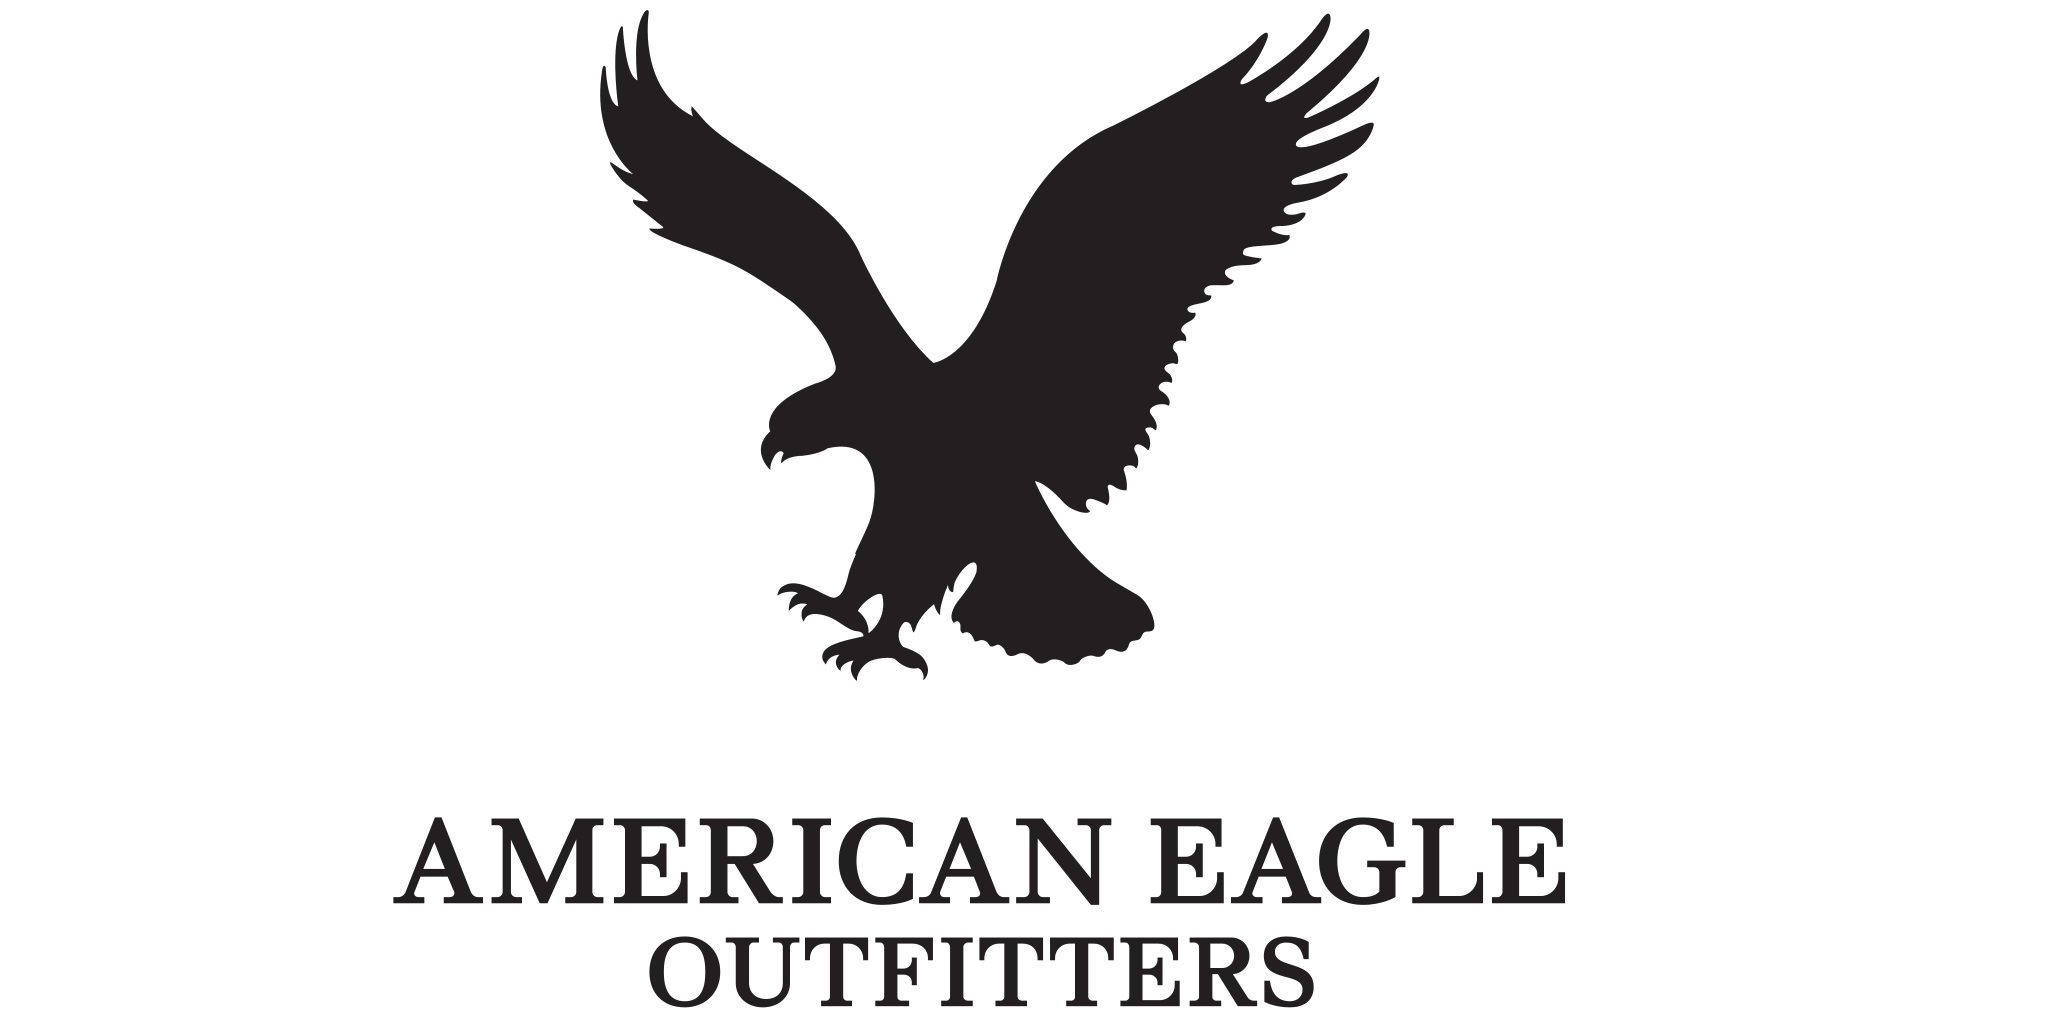 Американ игл. Фирма одежды с орлом на логотипе. Бренд с лого Орел. Логотип с черной птицей бренд одежды.